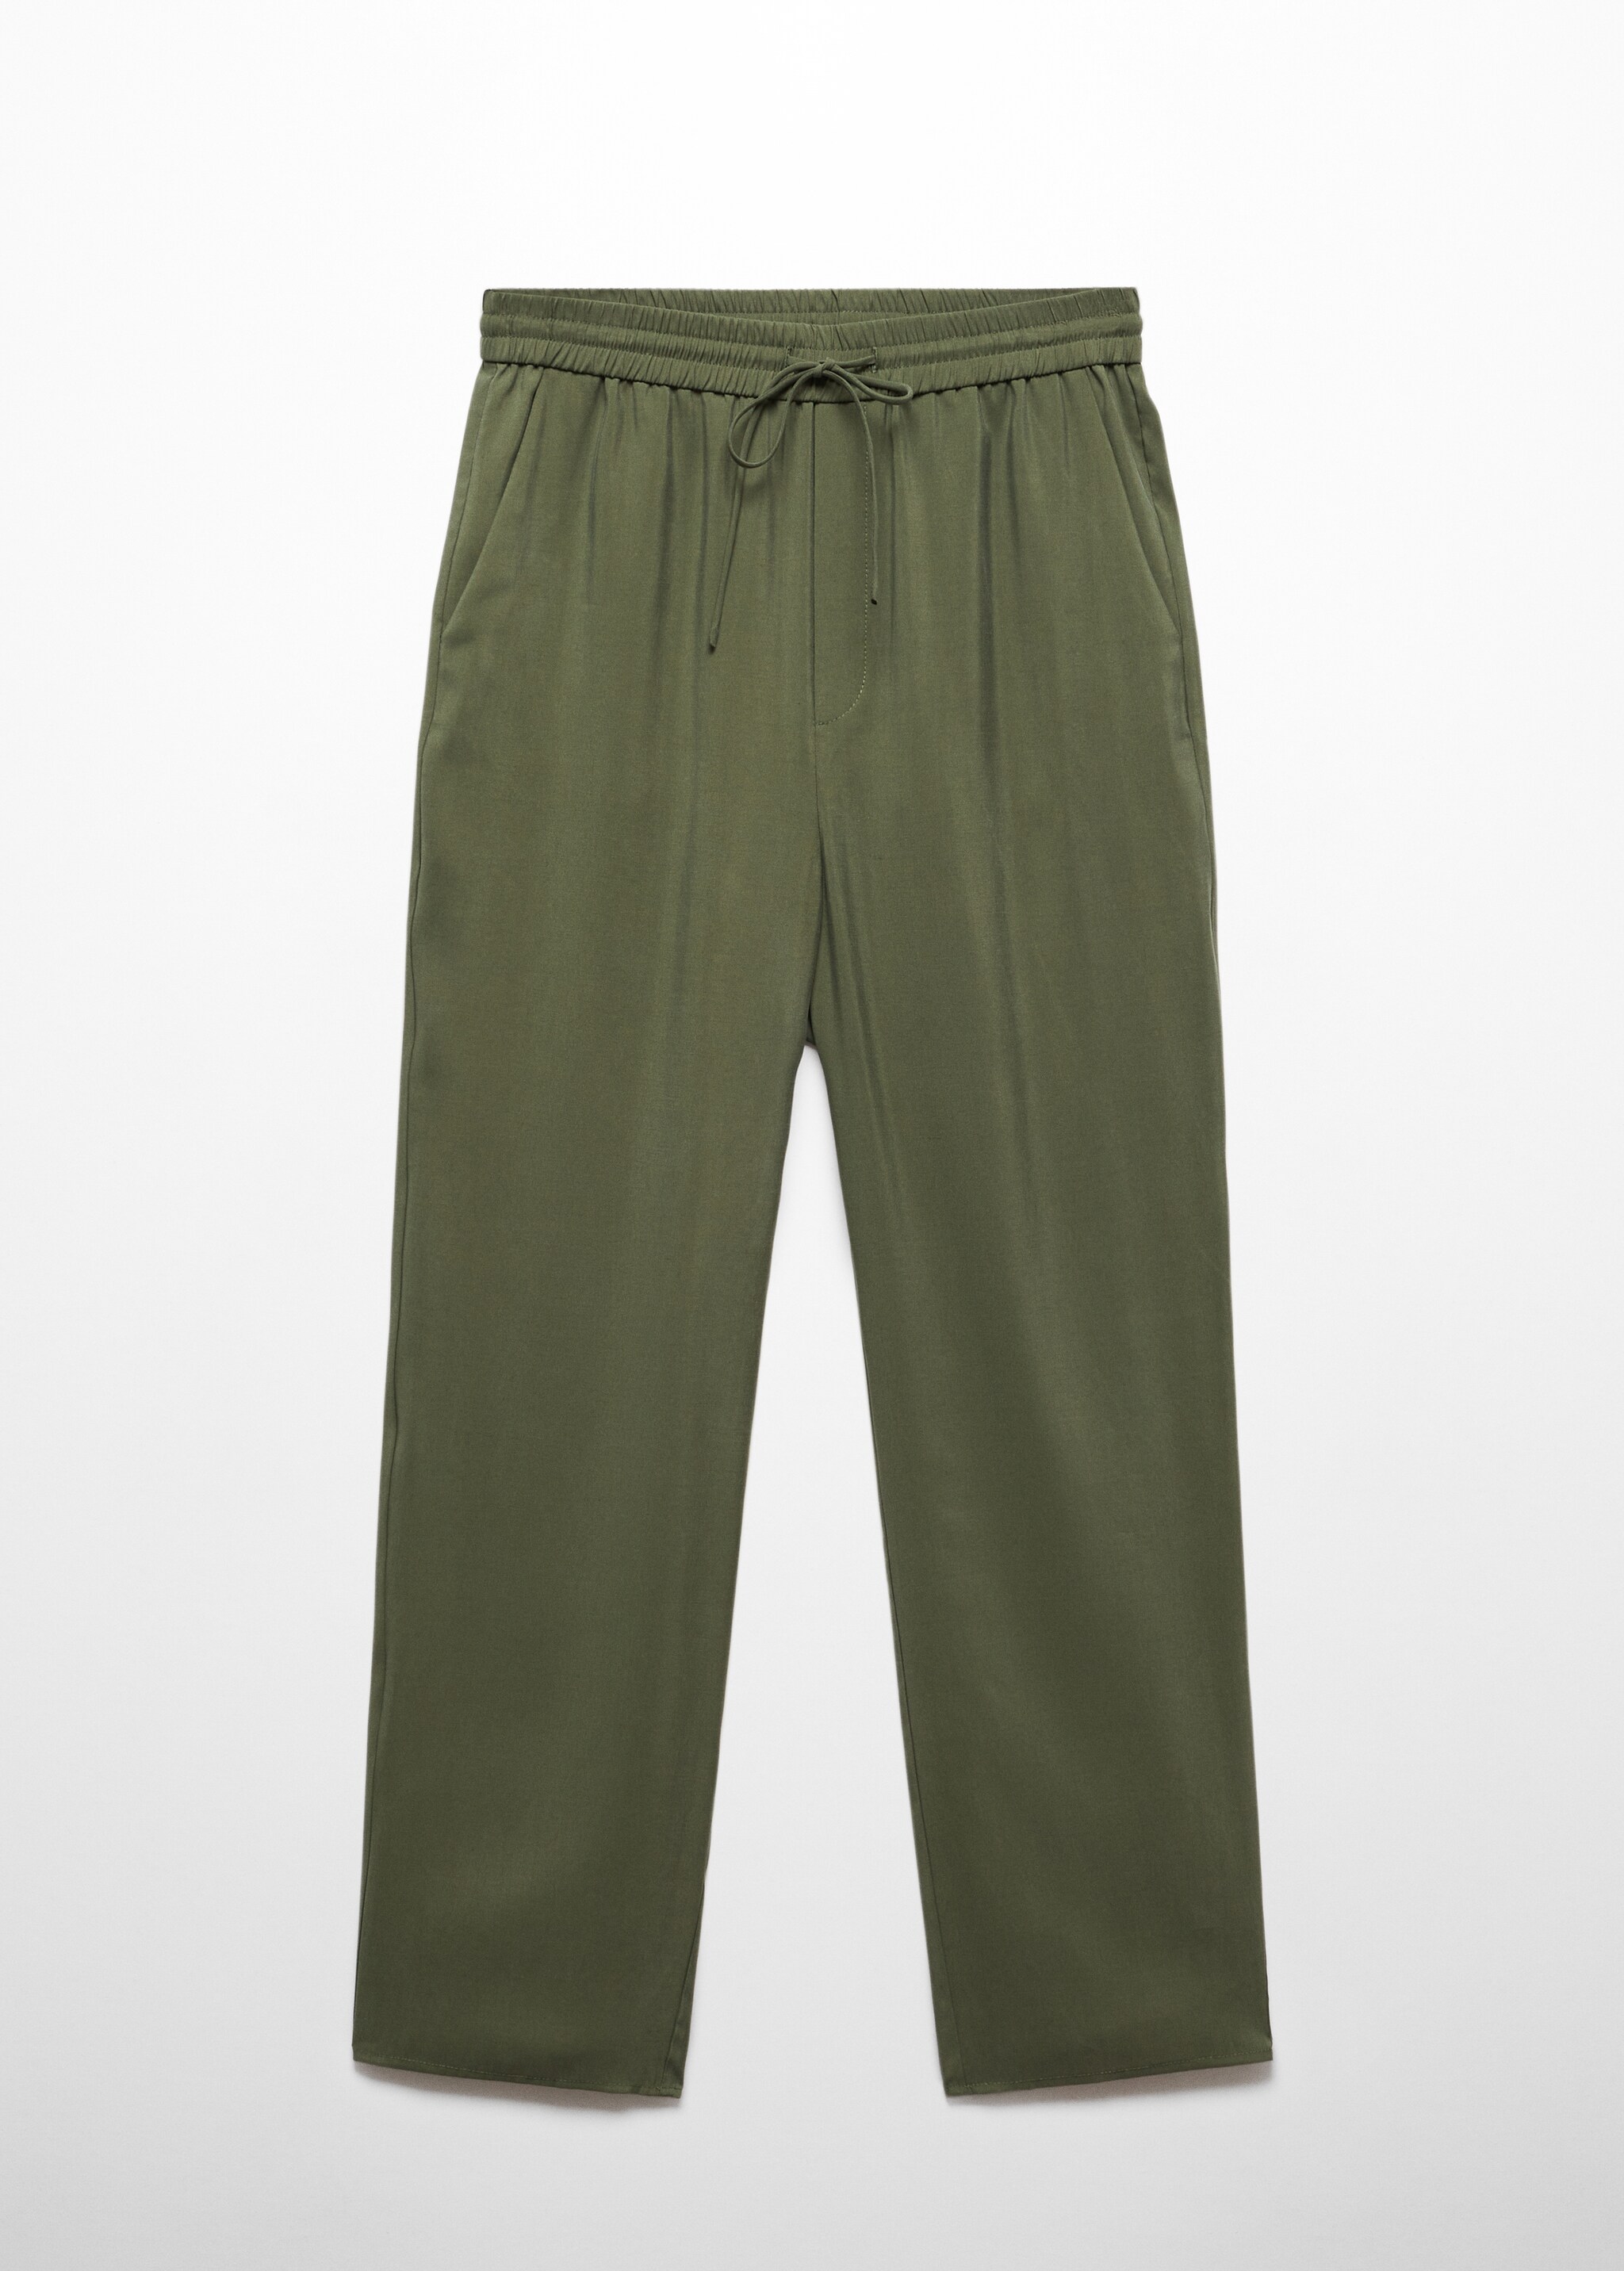 Pantalón modal cintura elástica - Artículo sin modelo